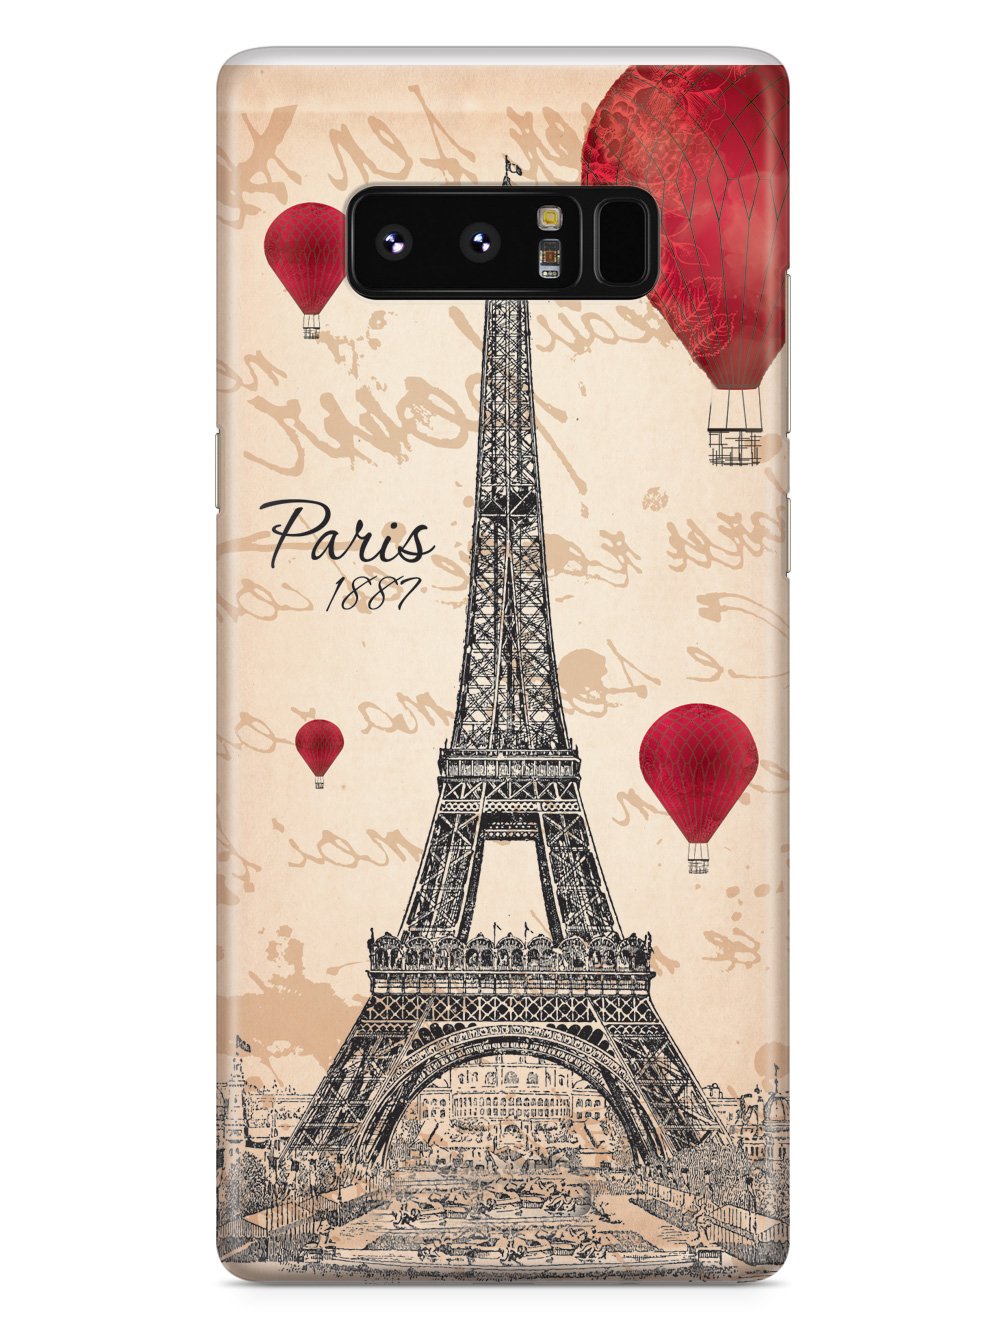 Paris Eiffel Tower 1887 Case